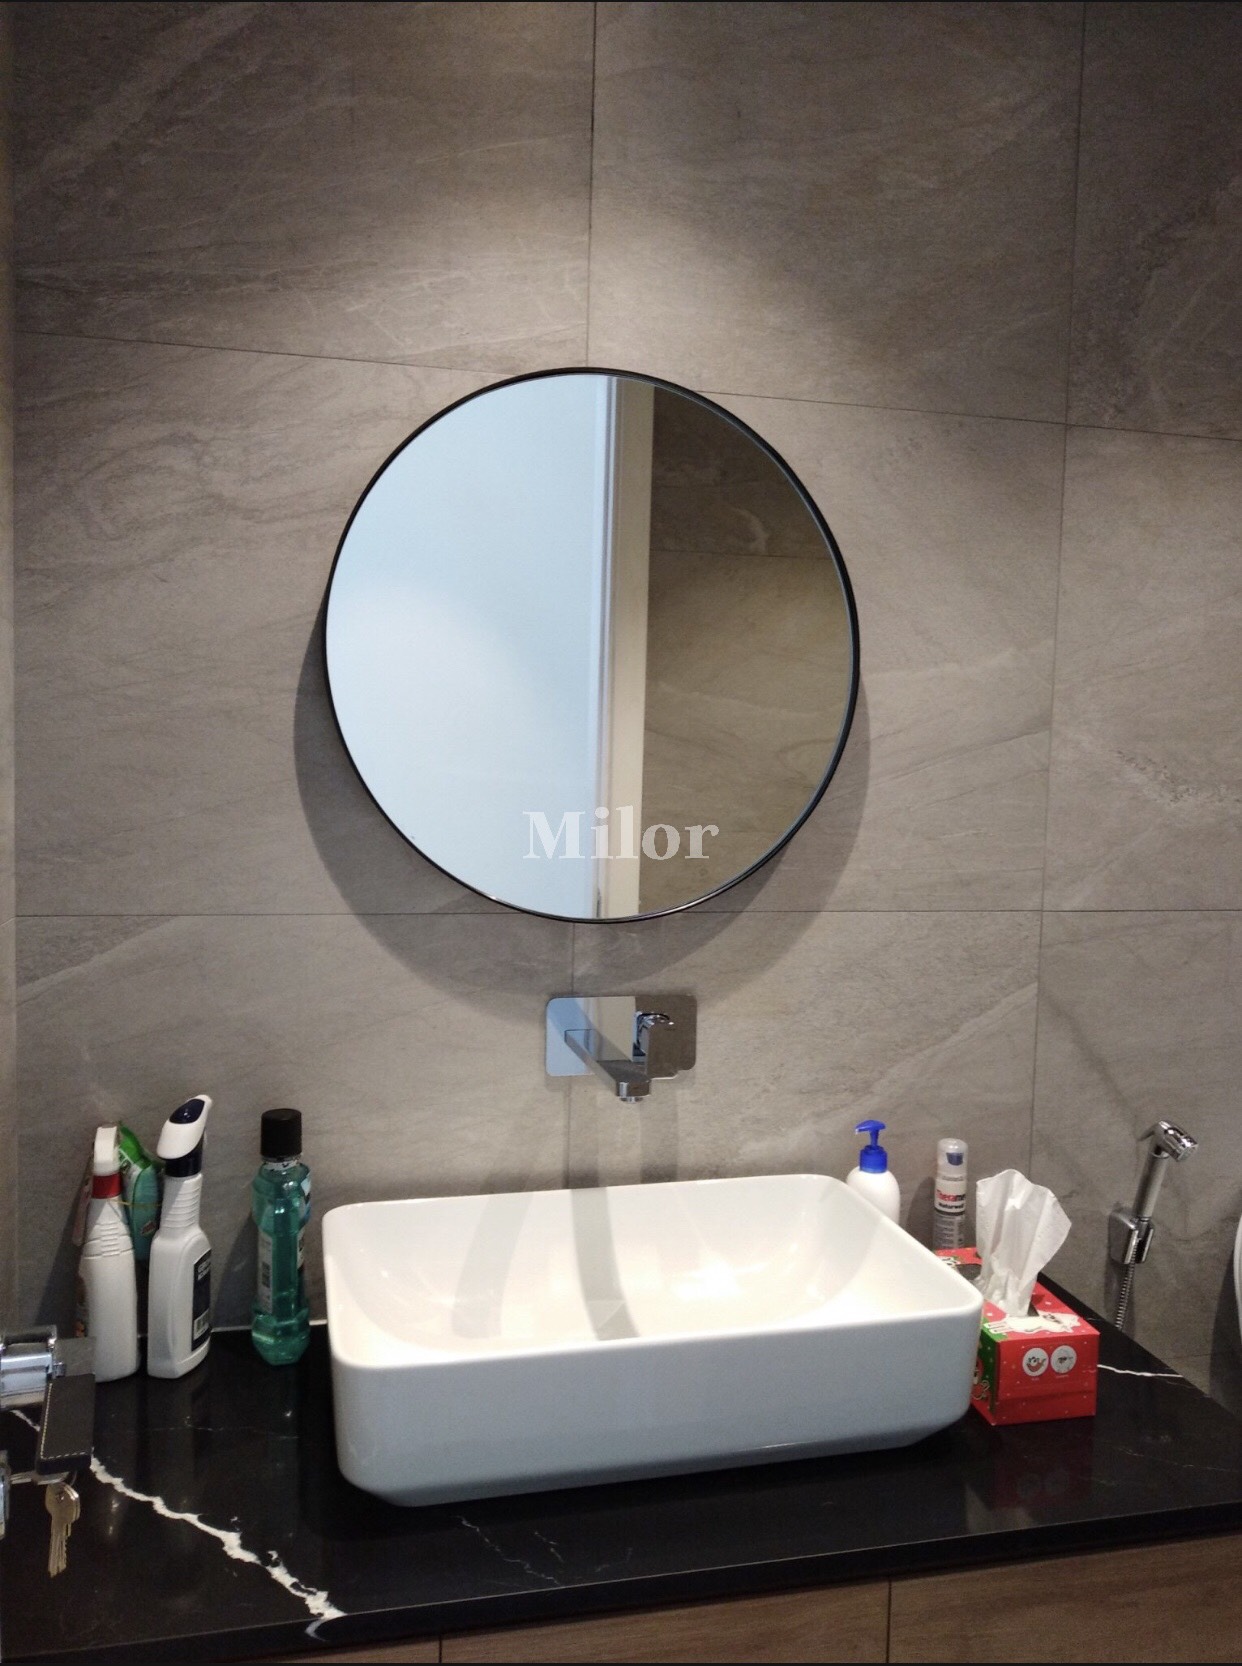 Với sự kết hợp hoàn hảo giữa tính thẩm mỹ và chất lượng, gương phòng tắm tròn Optiama sẽ khiến cho ngôi nhà của bạn trở nên sang trọng hơn bao giờ hết. Với thiết kế đặc biệt và khả năng phản xạ tuyệt vời, bạn sẽ không bao giờ phải lo lắng về chất lượng và tính thẩm mỹ của sản phẩm. Click vào hình ảnh liên quan để khám phá thêm.